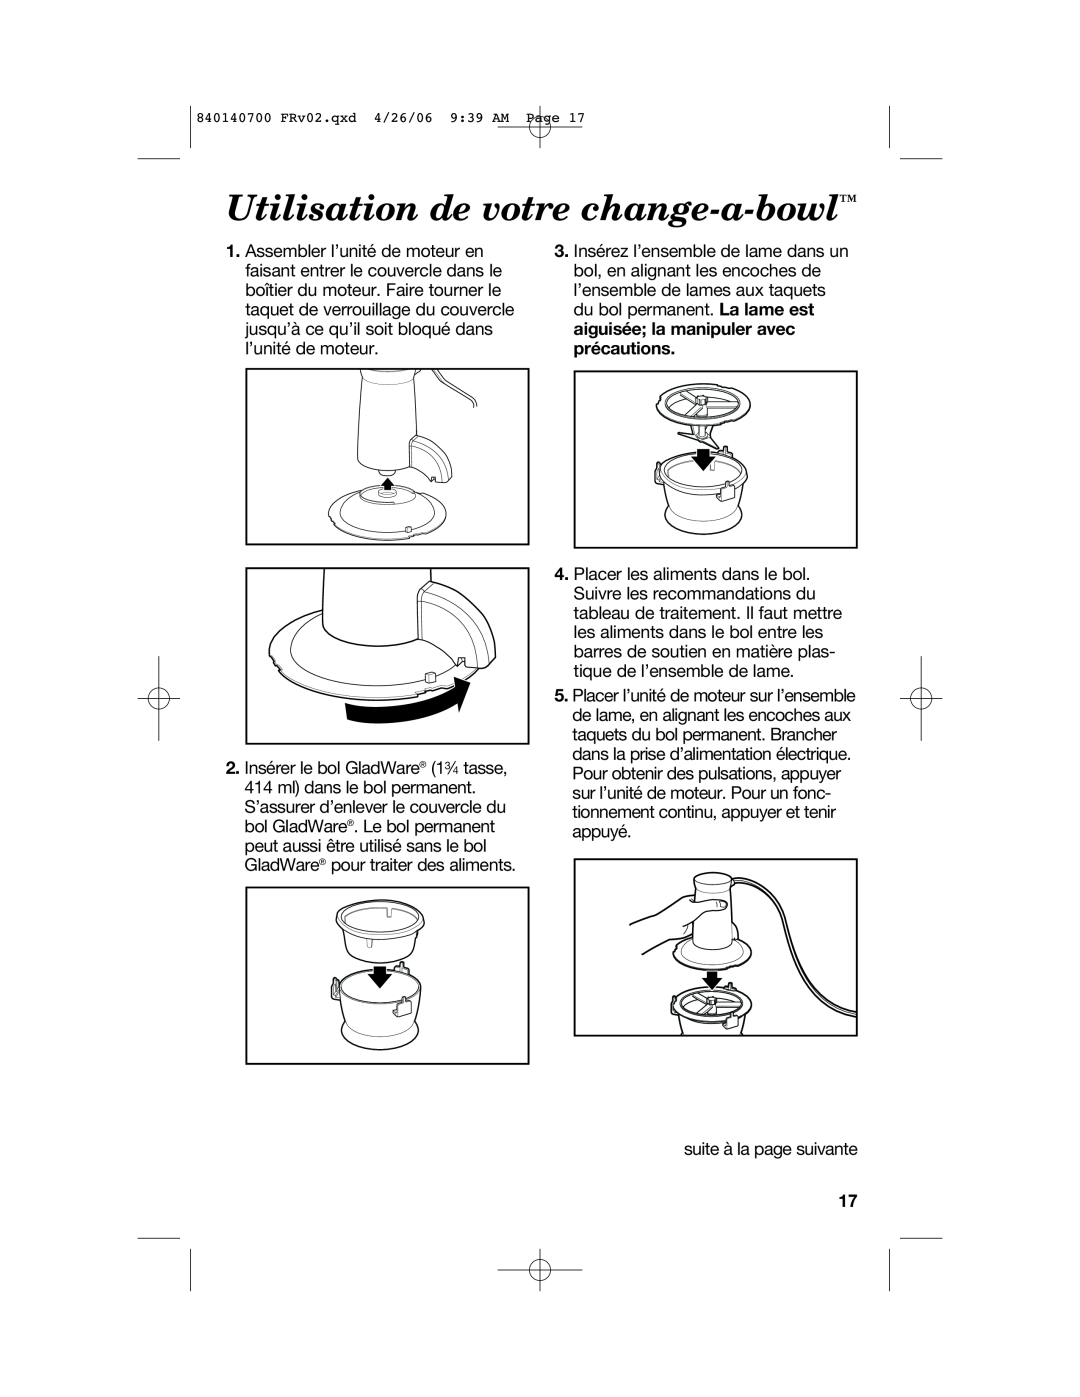 Hamilton Beach 72850 manual Utilisation de votre change-a-bowl 